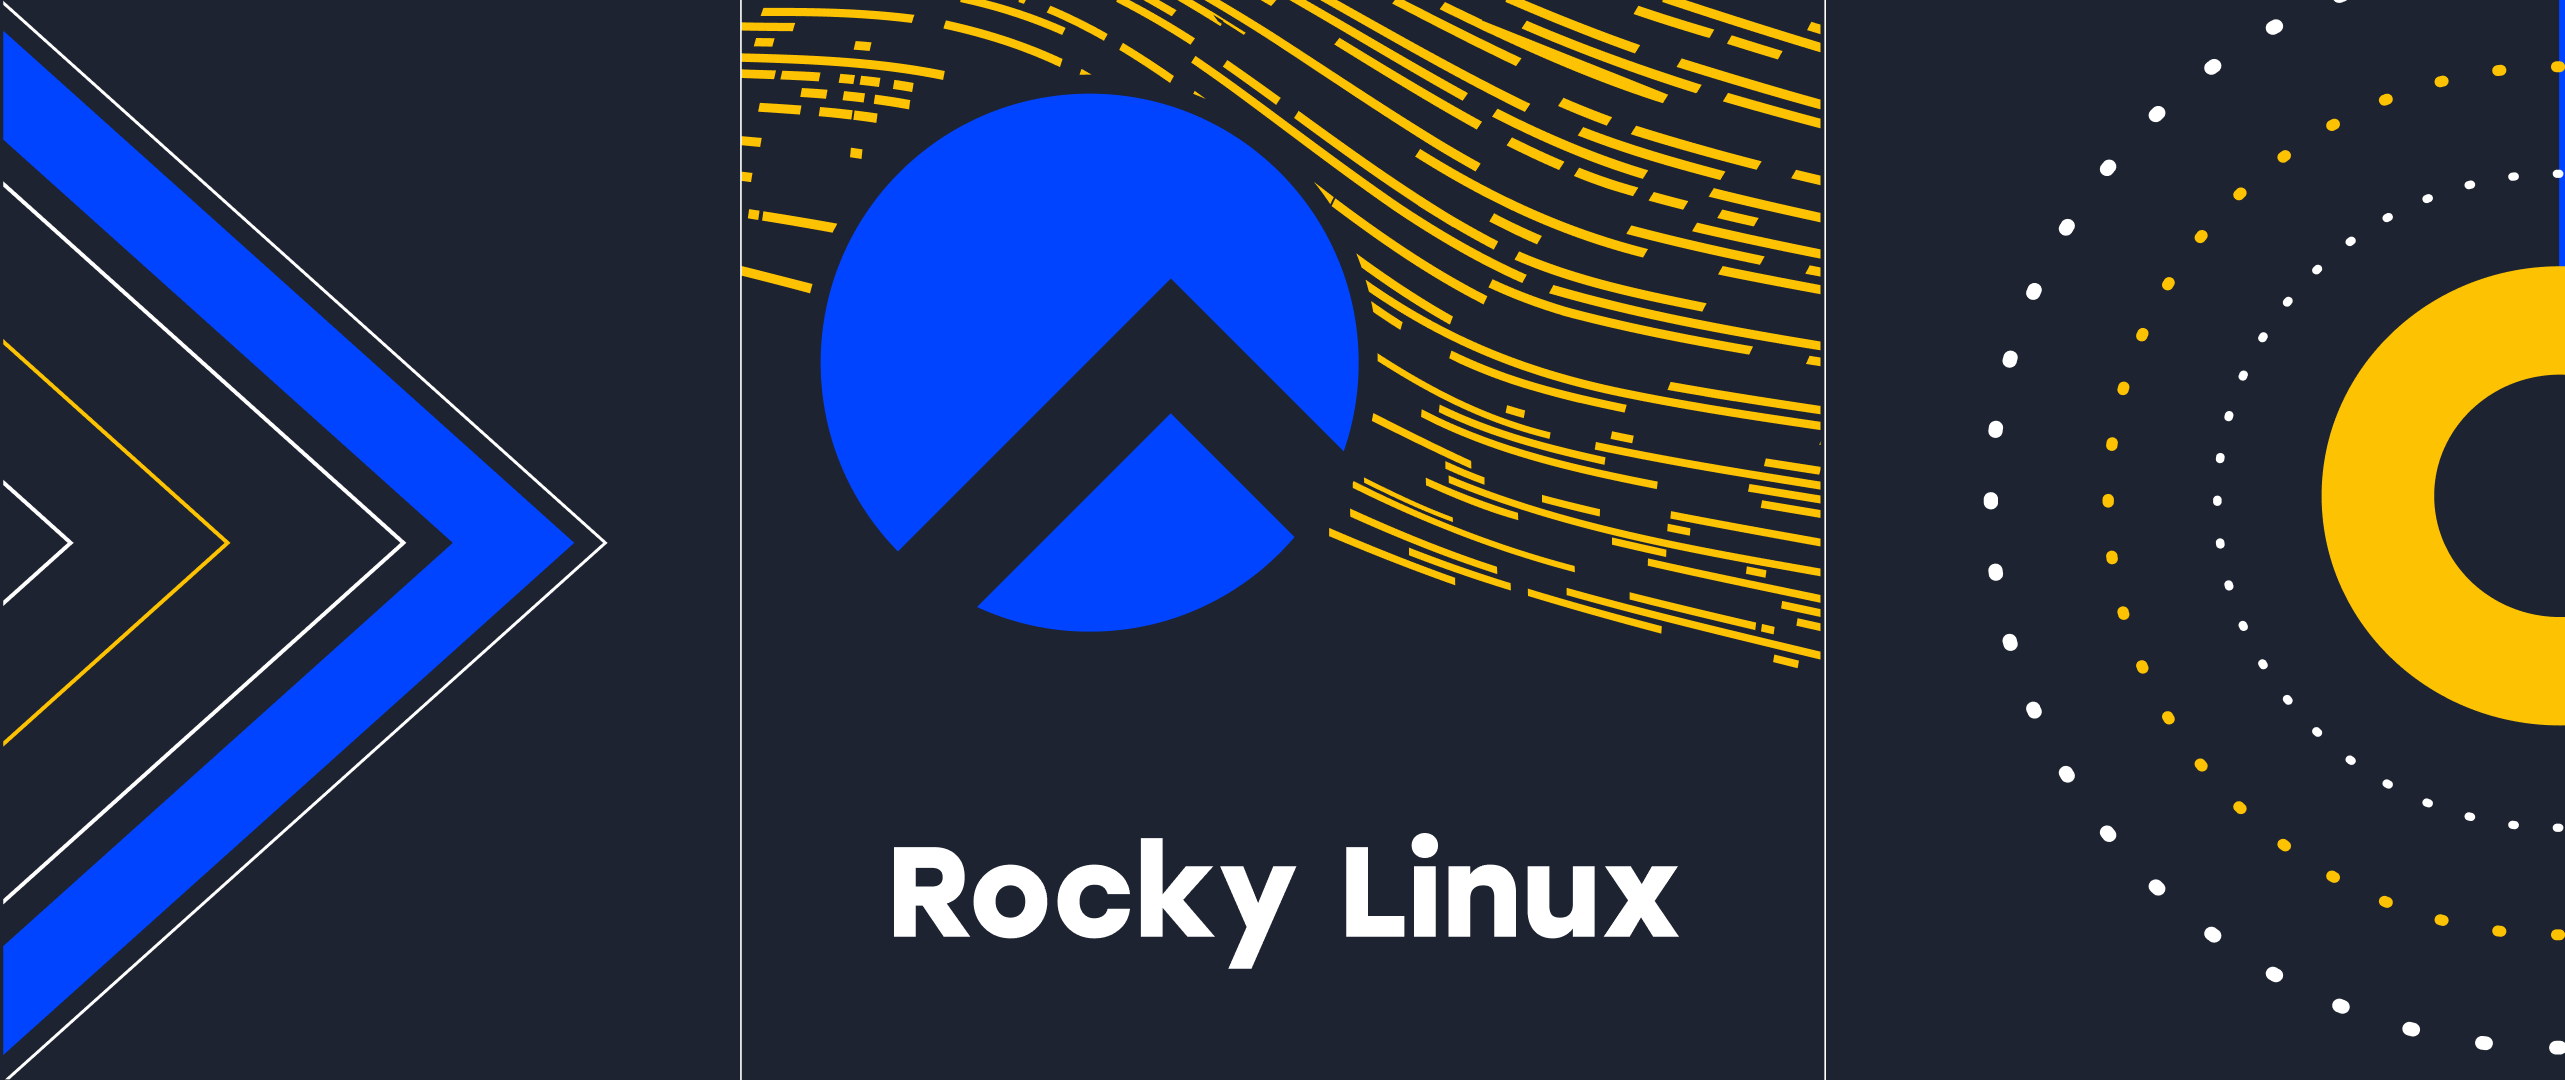 Serverspace ha agregado un nuevo Rocky Linux OS